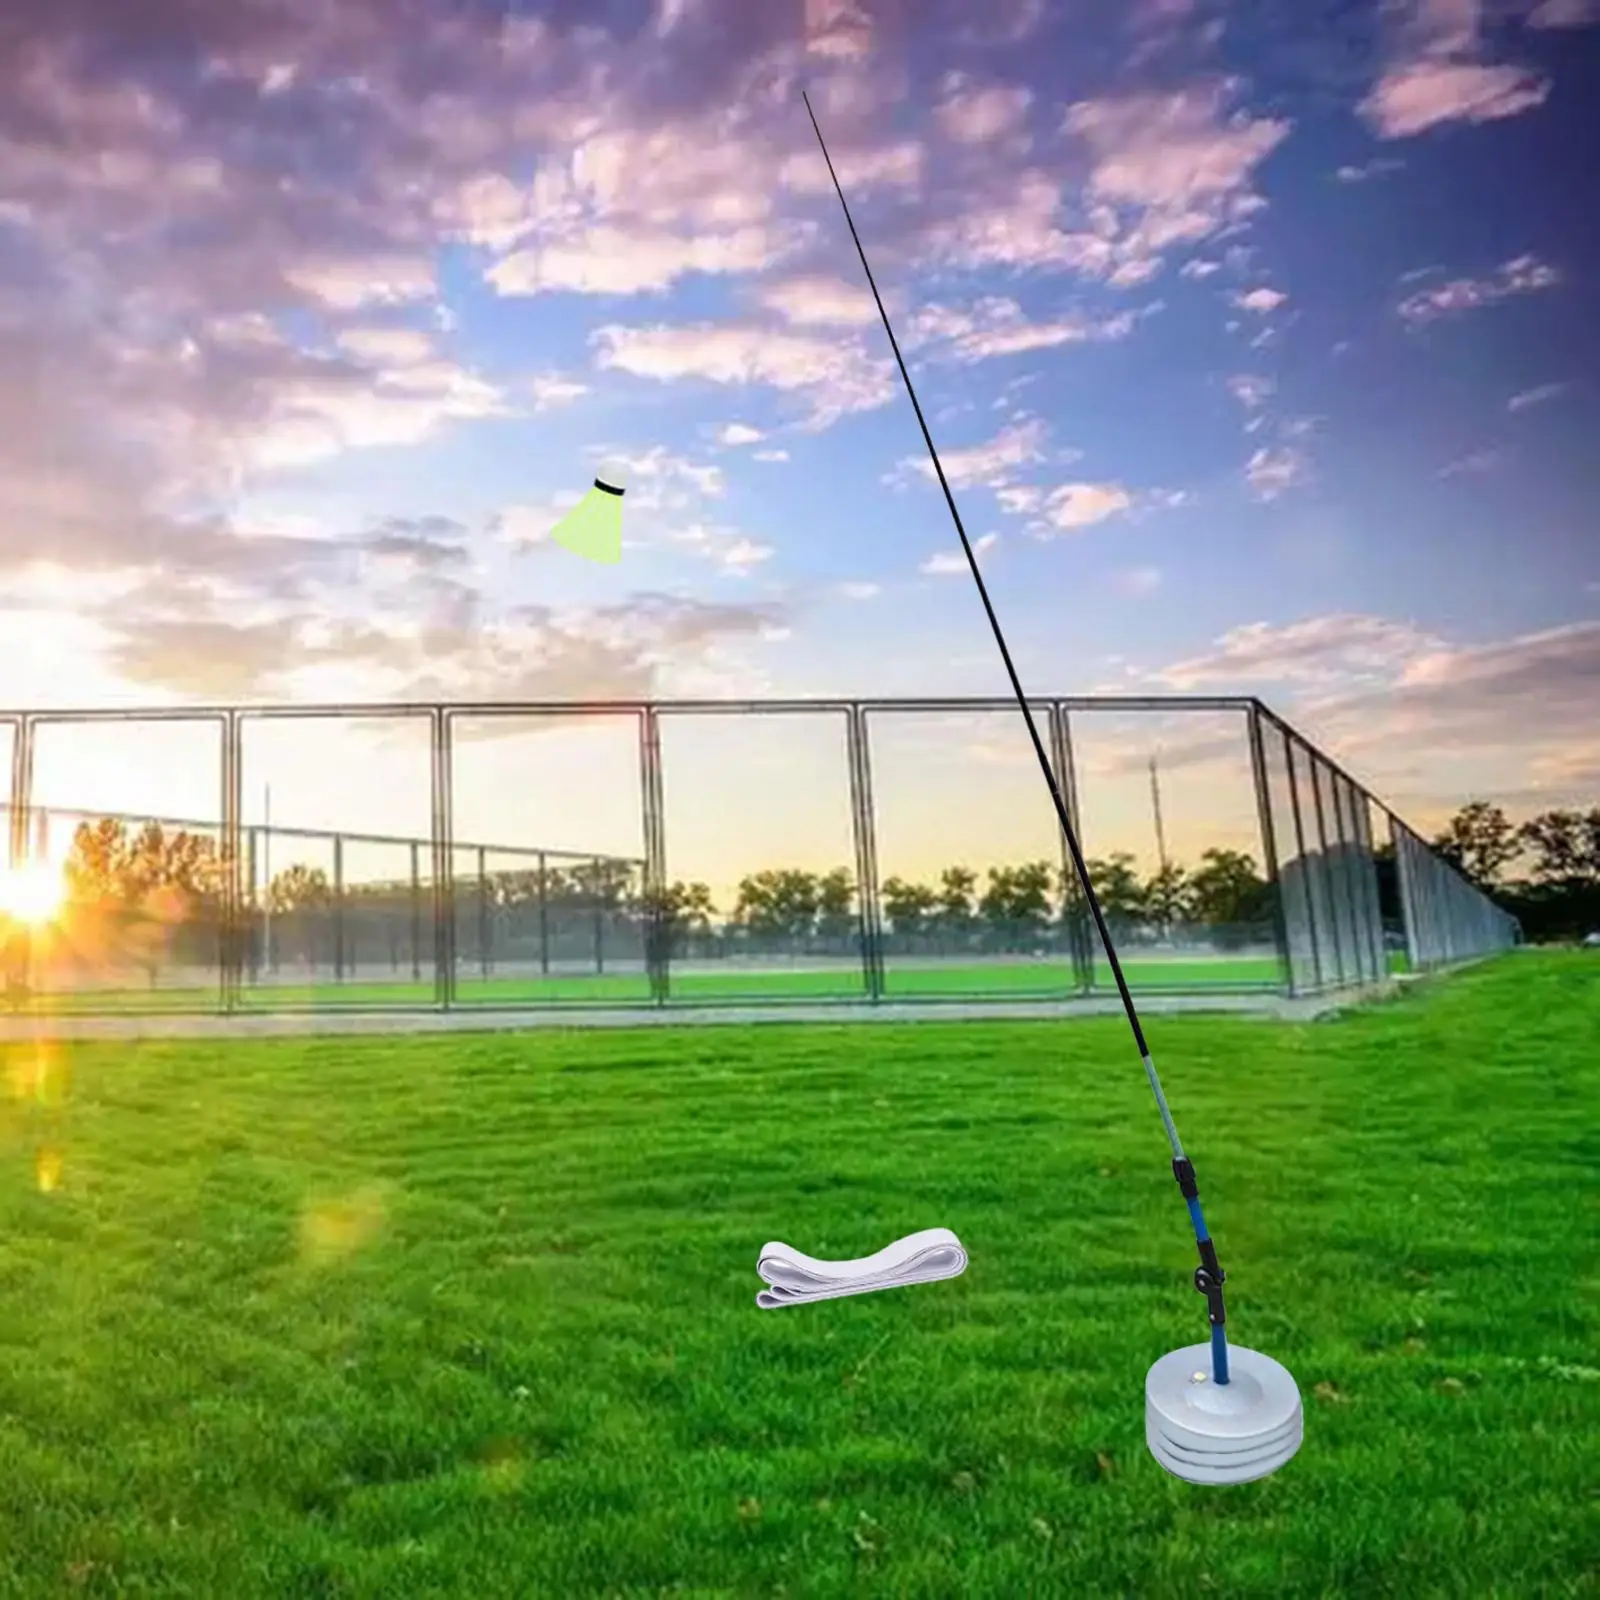 Badminton Trainer Equipment Self Practice Tool for Indoor Outdoor Exercising